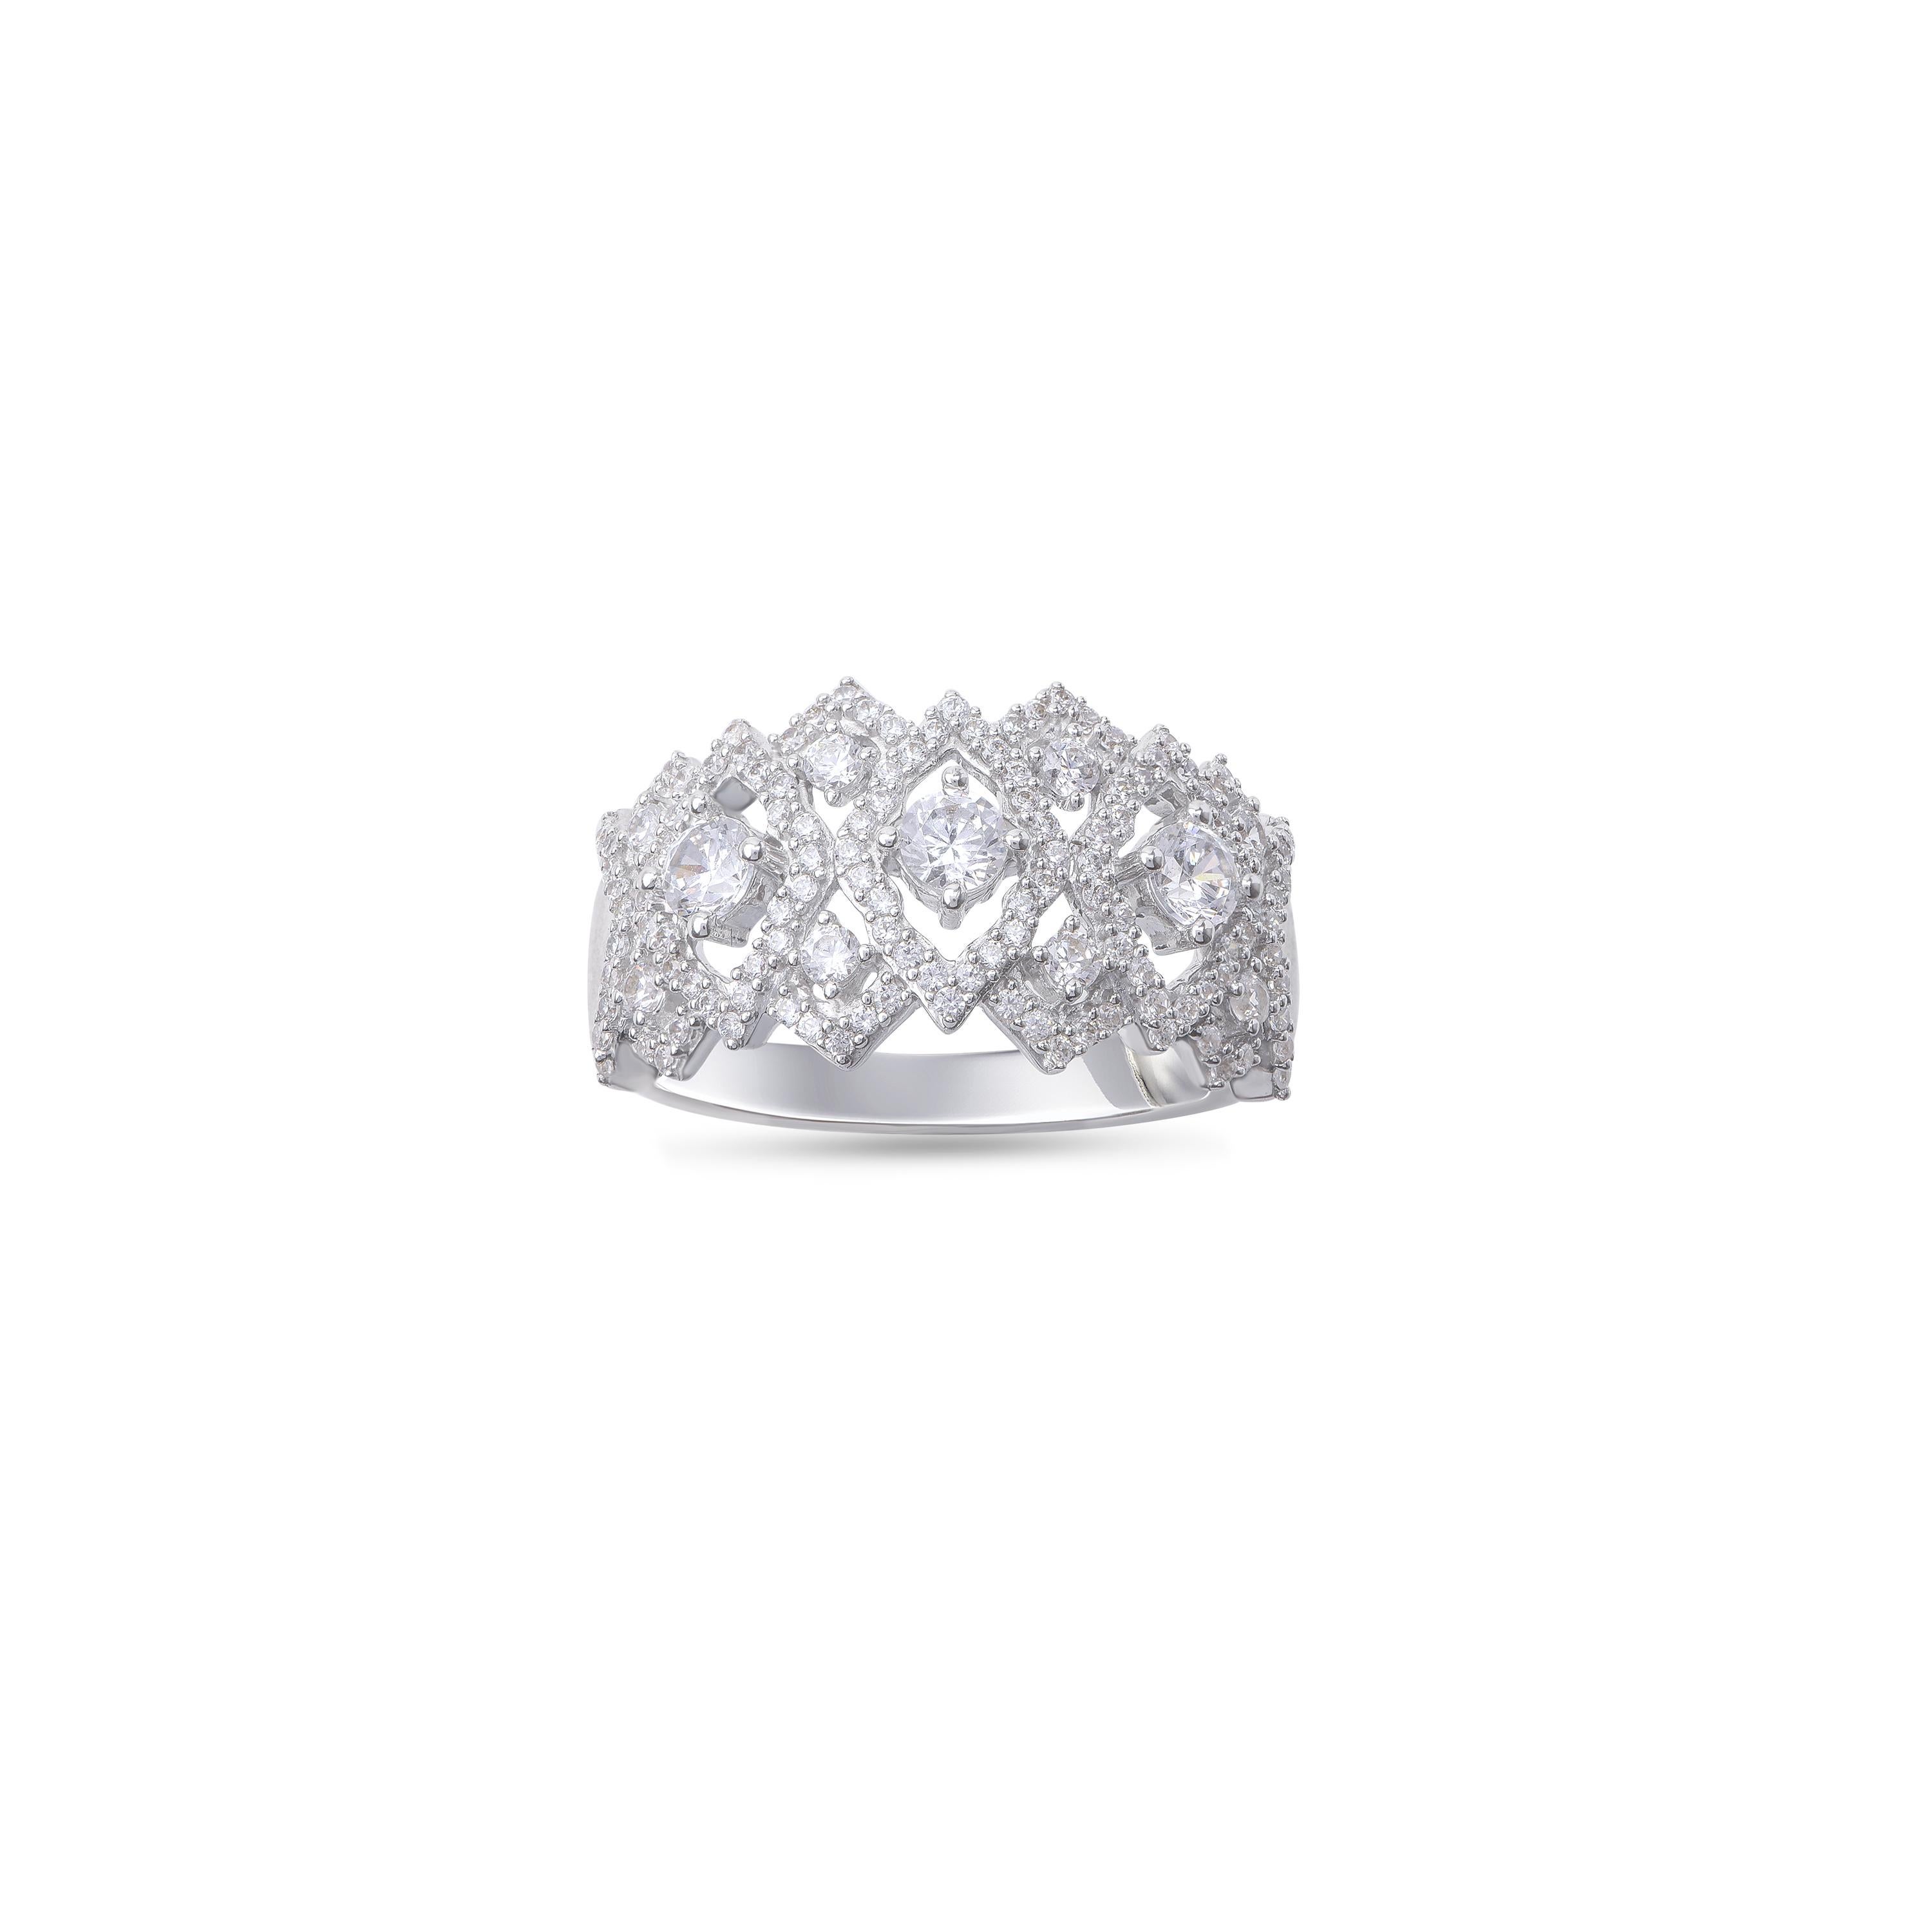 Cette magnifique alliance est sertie de 137 diamants brillants en serti clos et conçue par des experts en or blanc 18 carats. Les diamants sont classés couleur H-I, pureté I2. 

La couleur du métal et la taille de l'anneau peuvent être